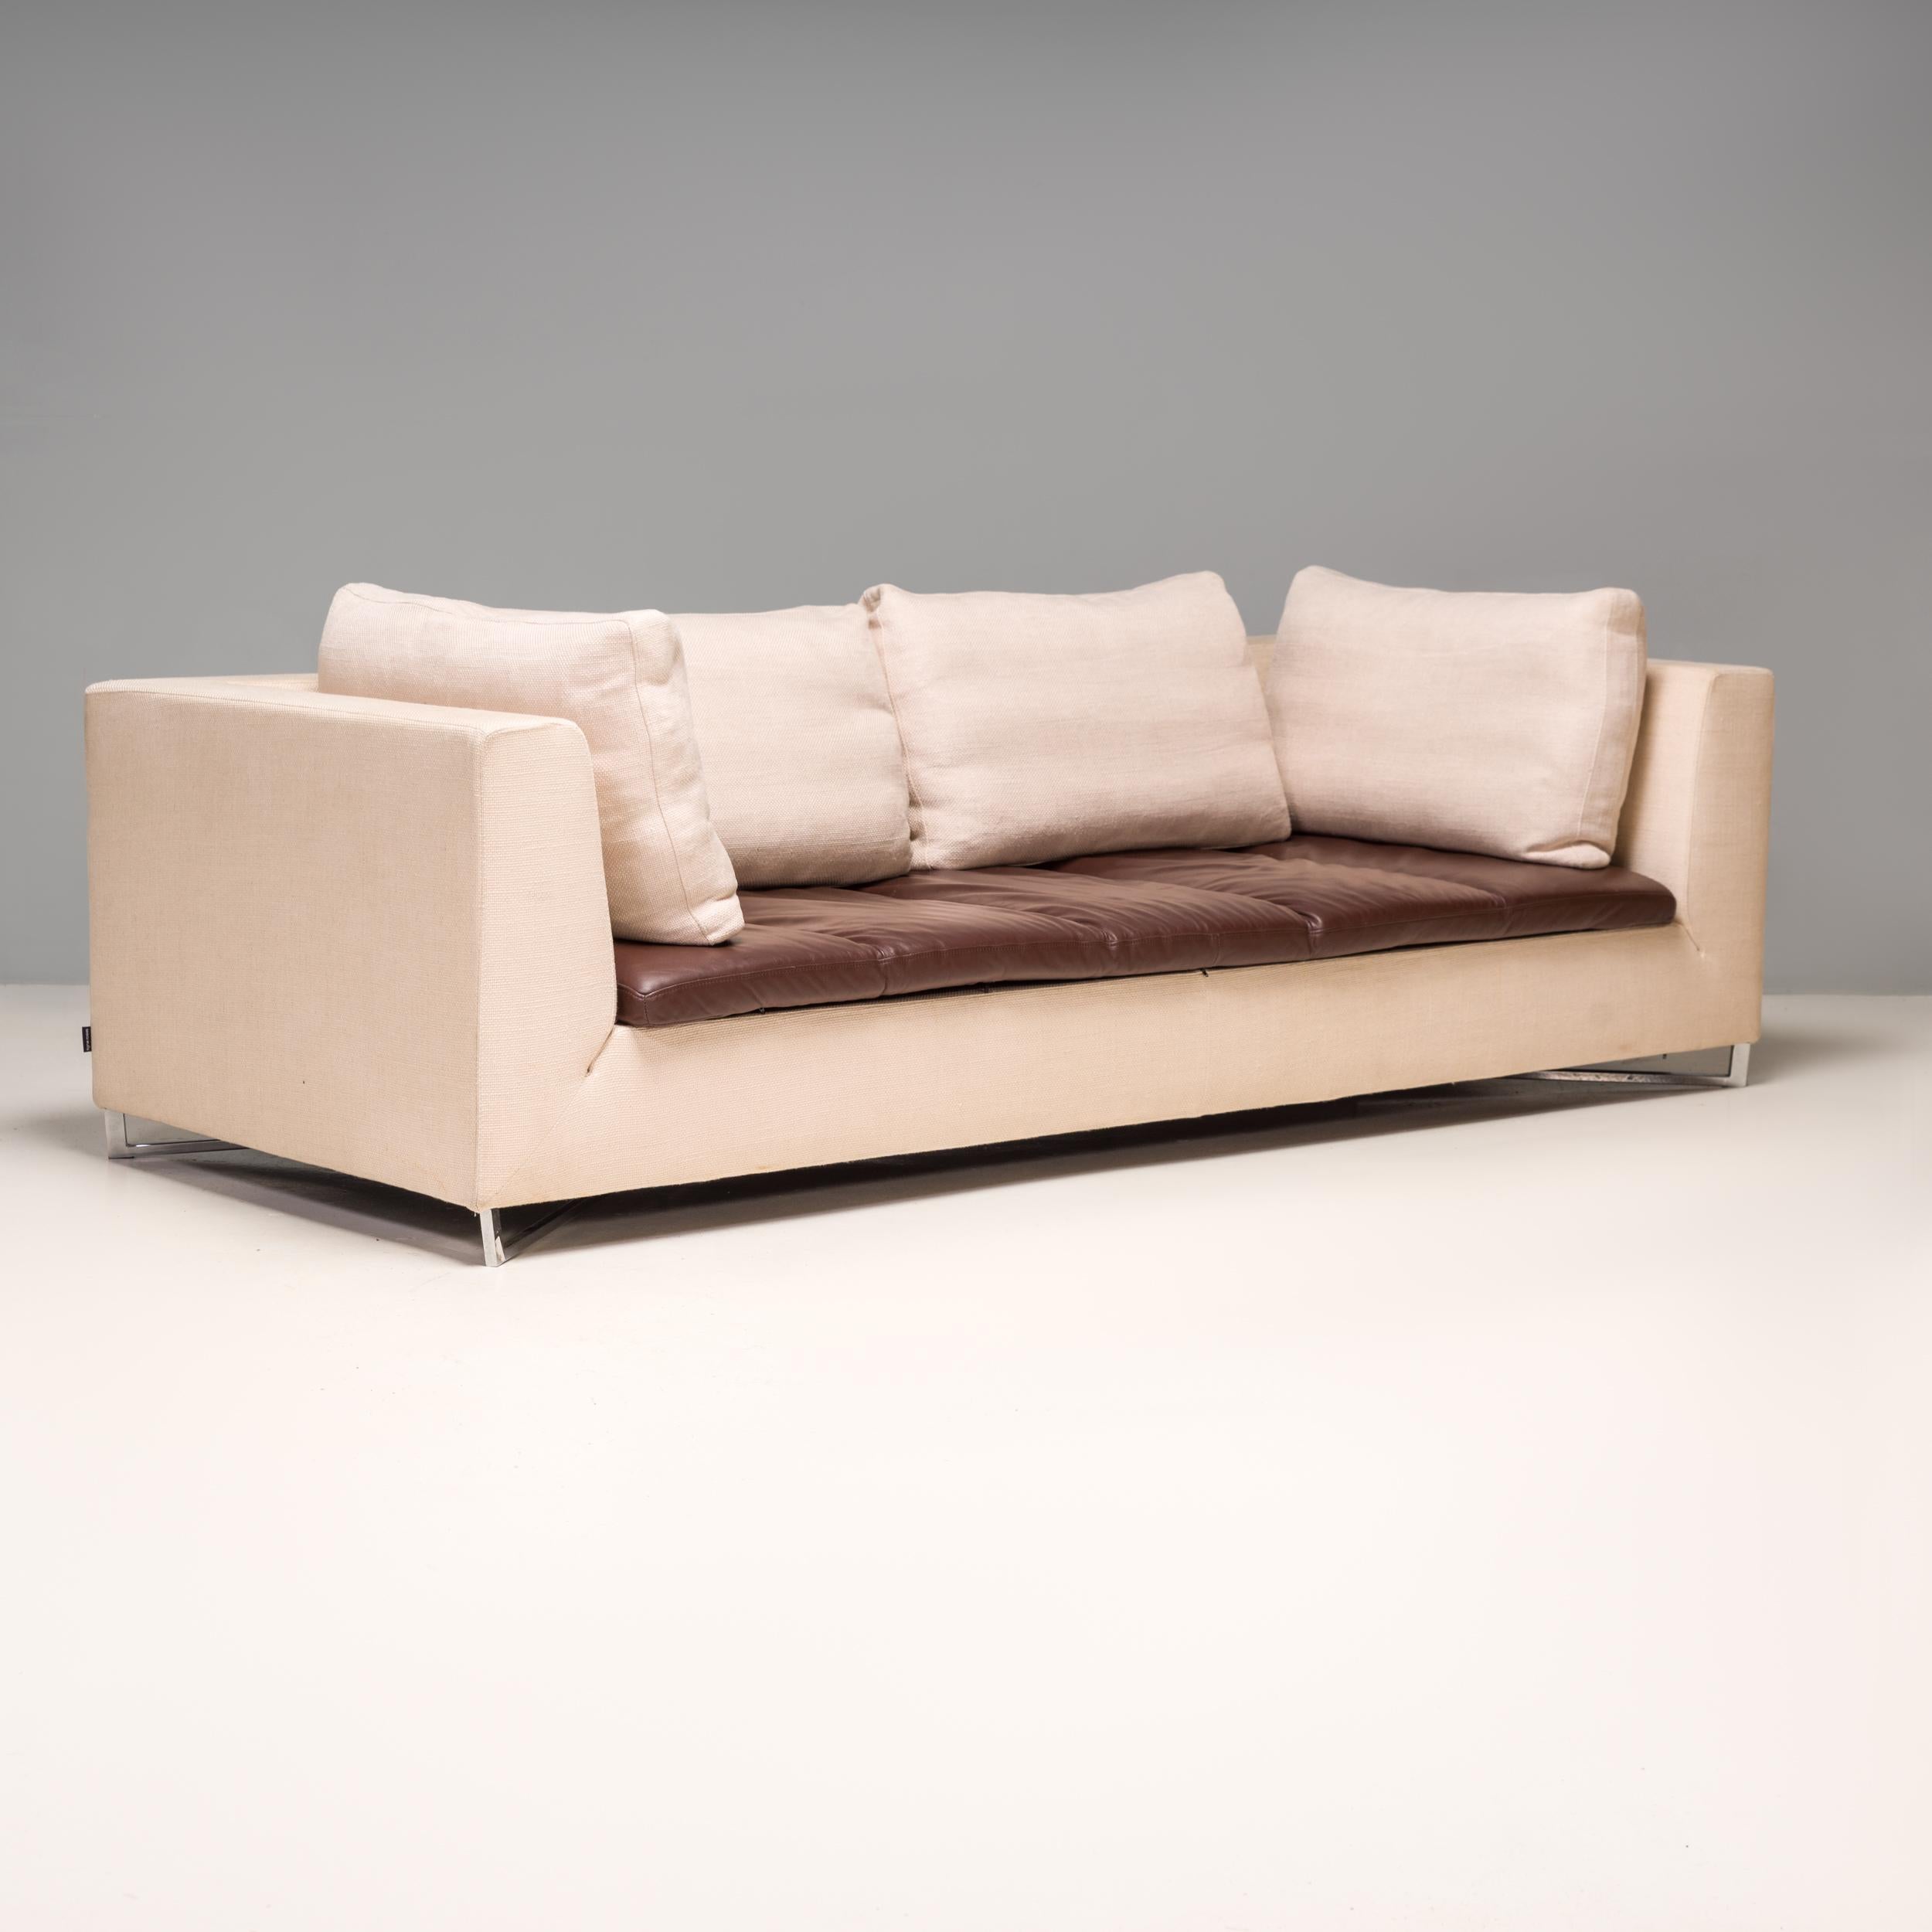 Diseñado por Didier Gomez para Ligne Roset, este sofá Feng de tres plazas combina la elegancia moderna con el máximo confort.

La robusta estructura está tapizada en tela tejida de color marfil y se asienta sobre una base angular cromada. 

La tela